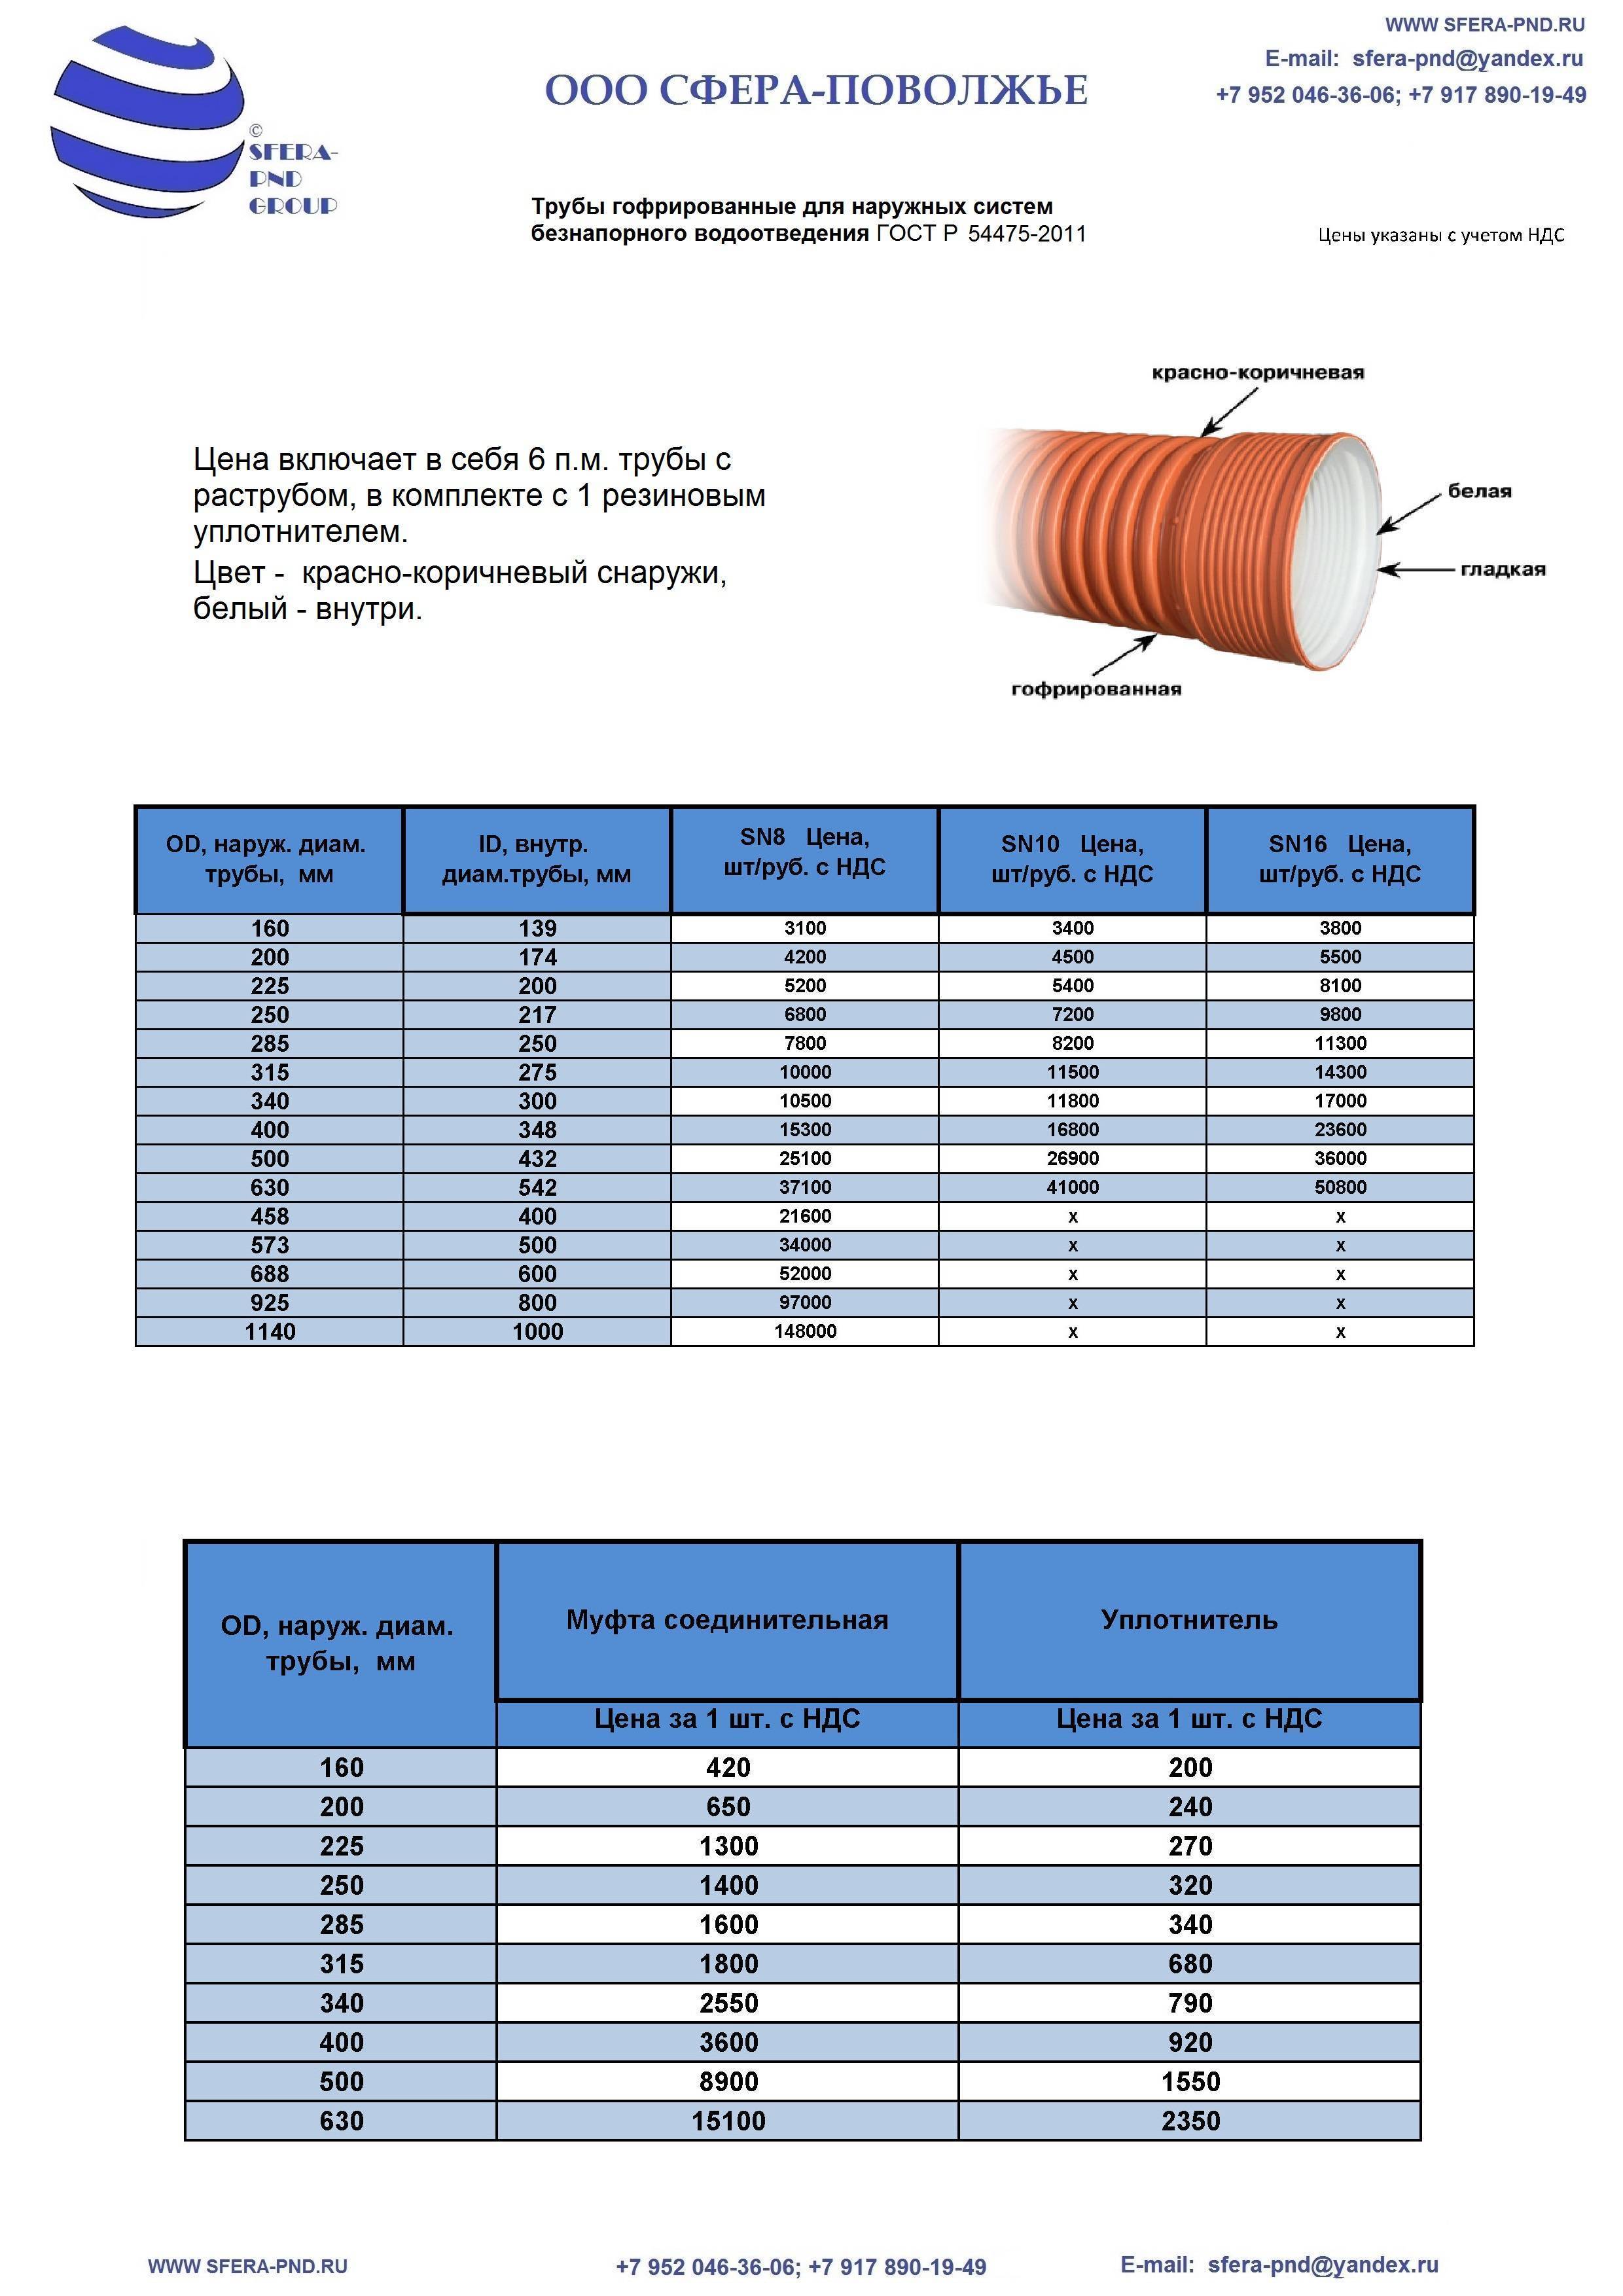 Монтаж водопровода из труб пнд и особенности их применения